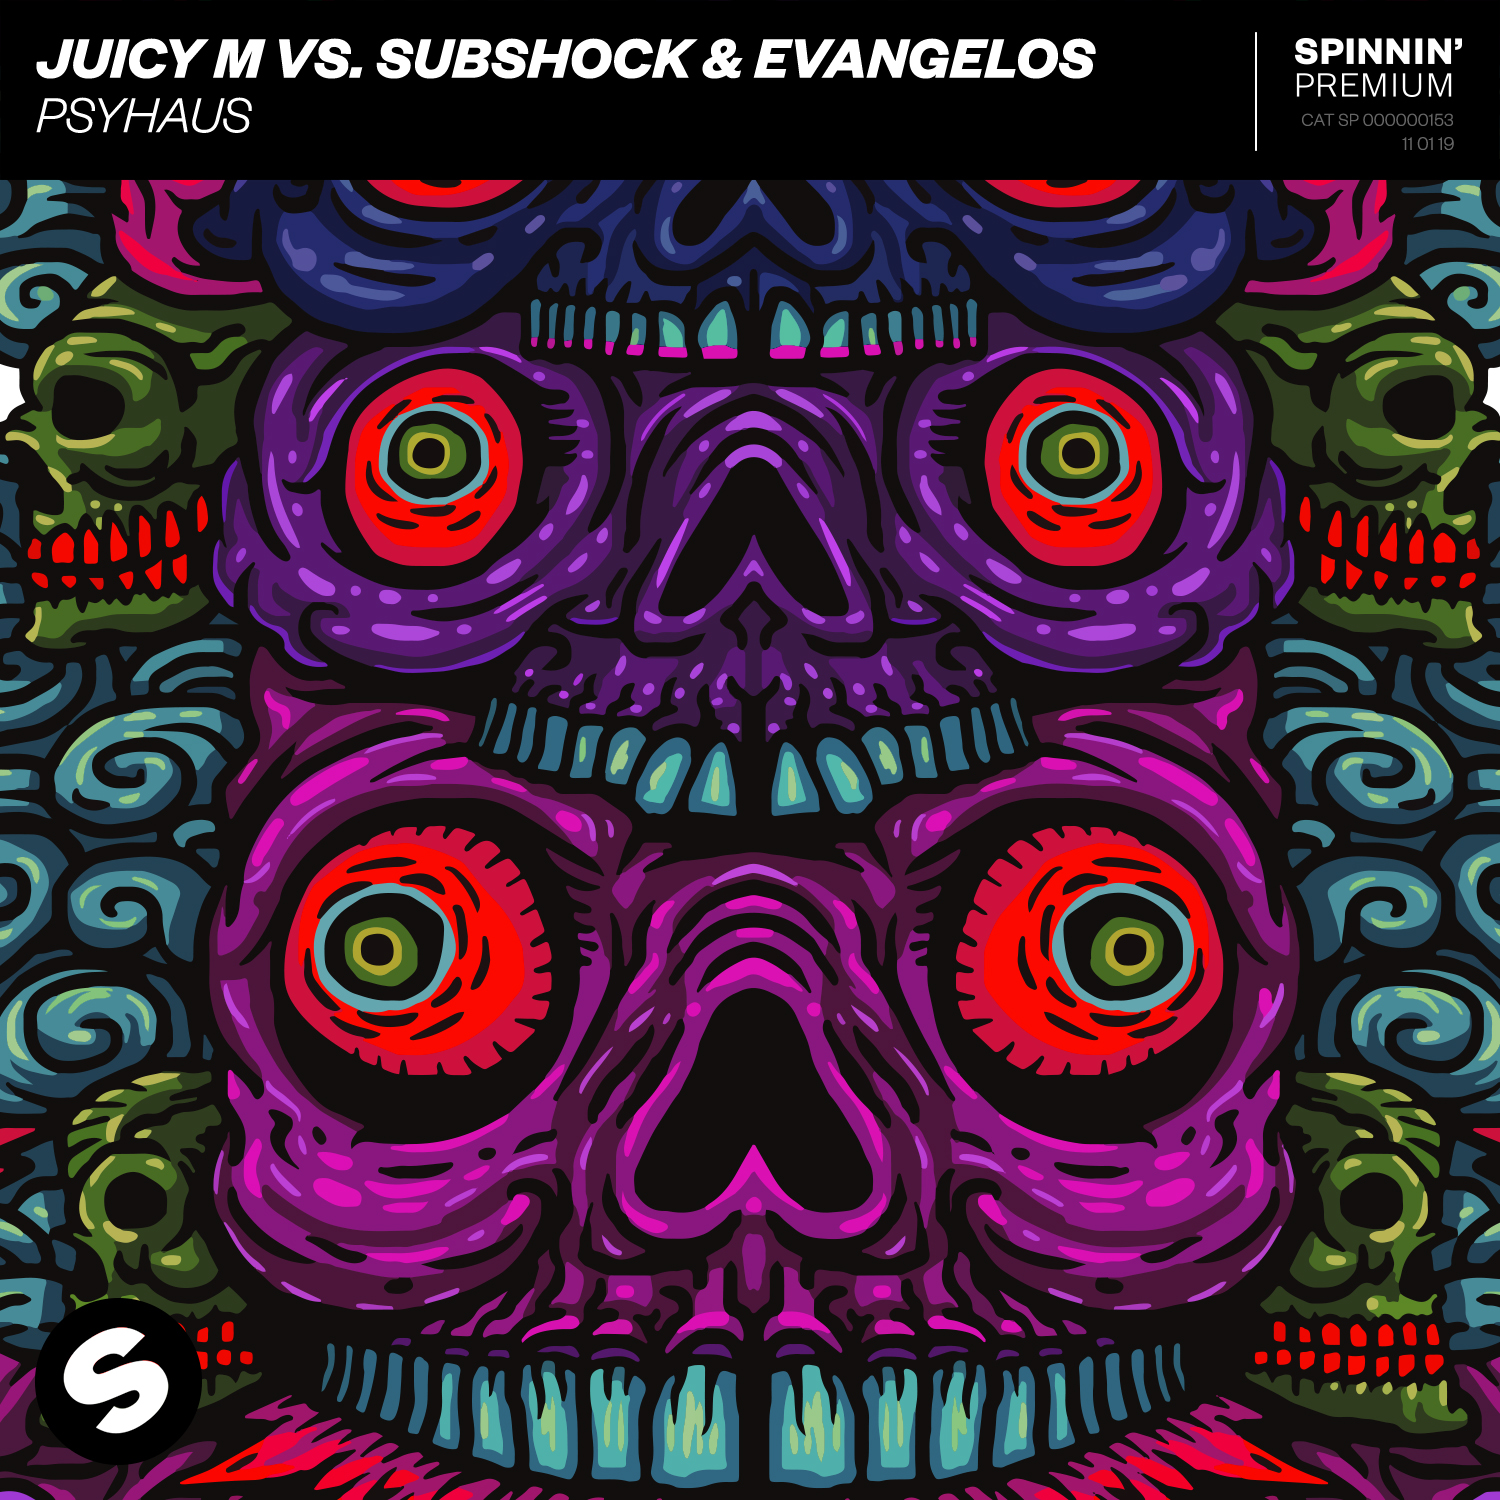 Subshock & Evangelos Team up with Juicy M on “Psyhaus”